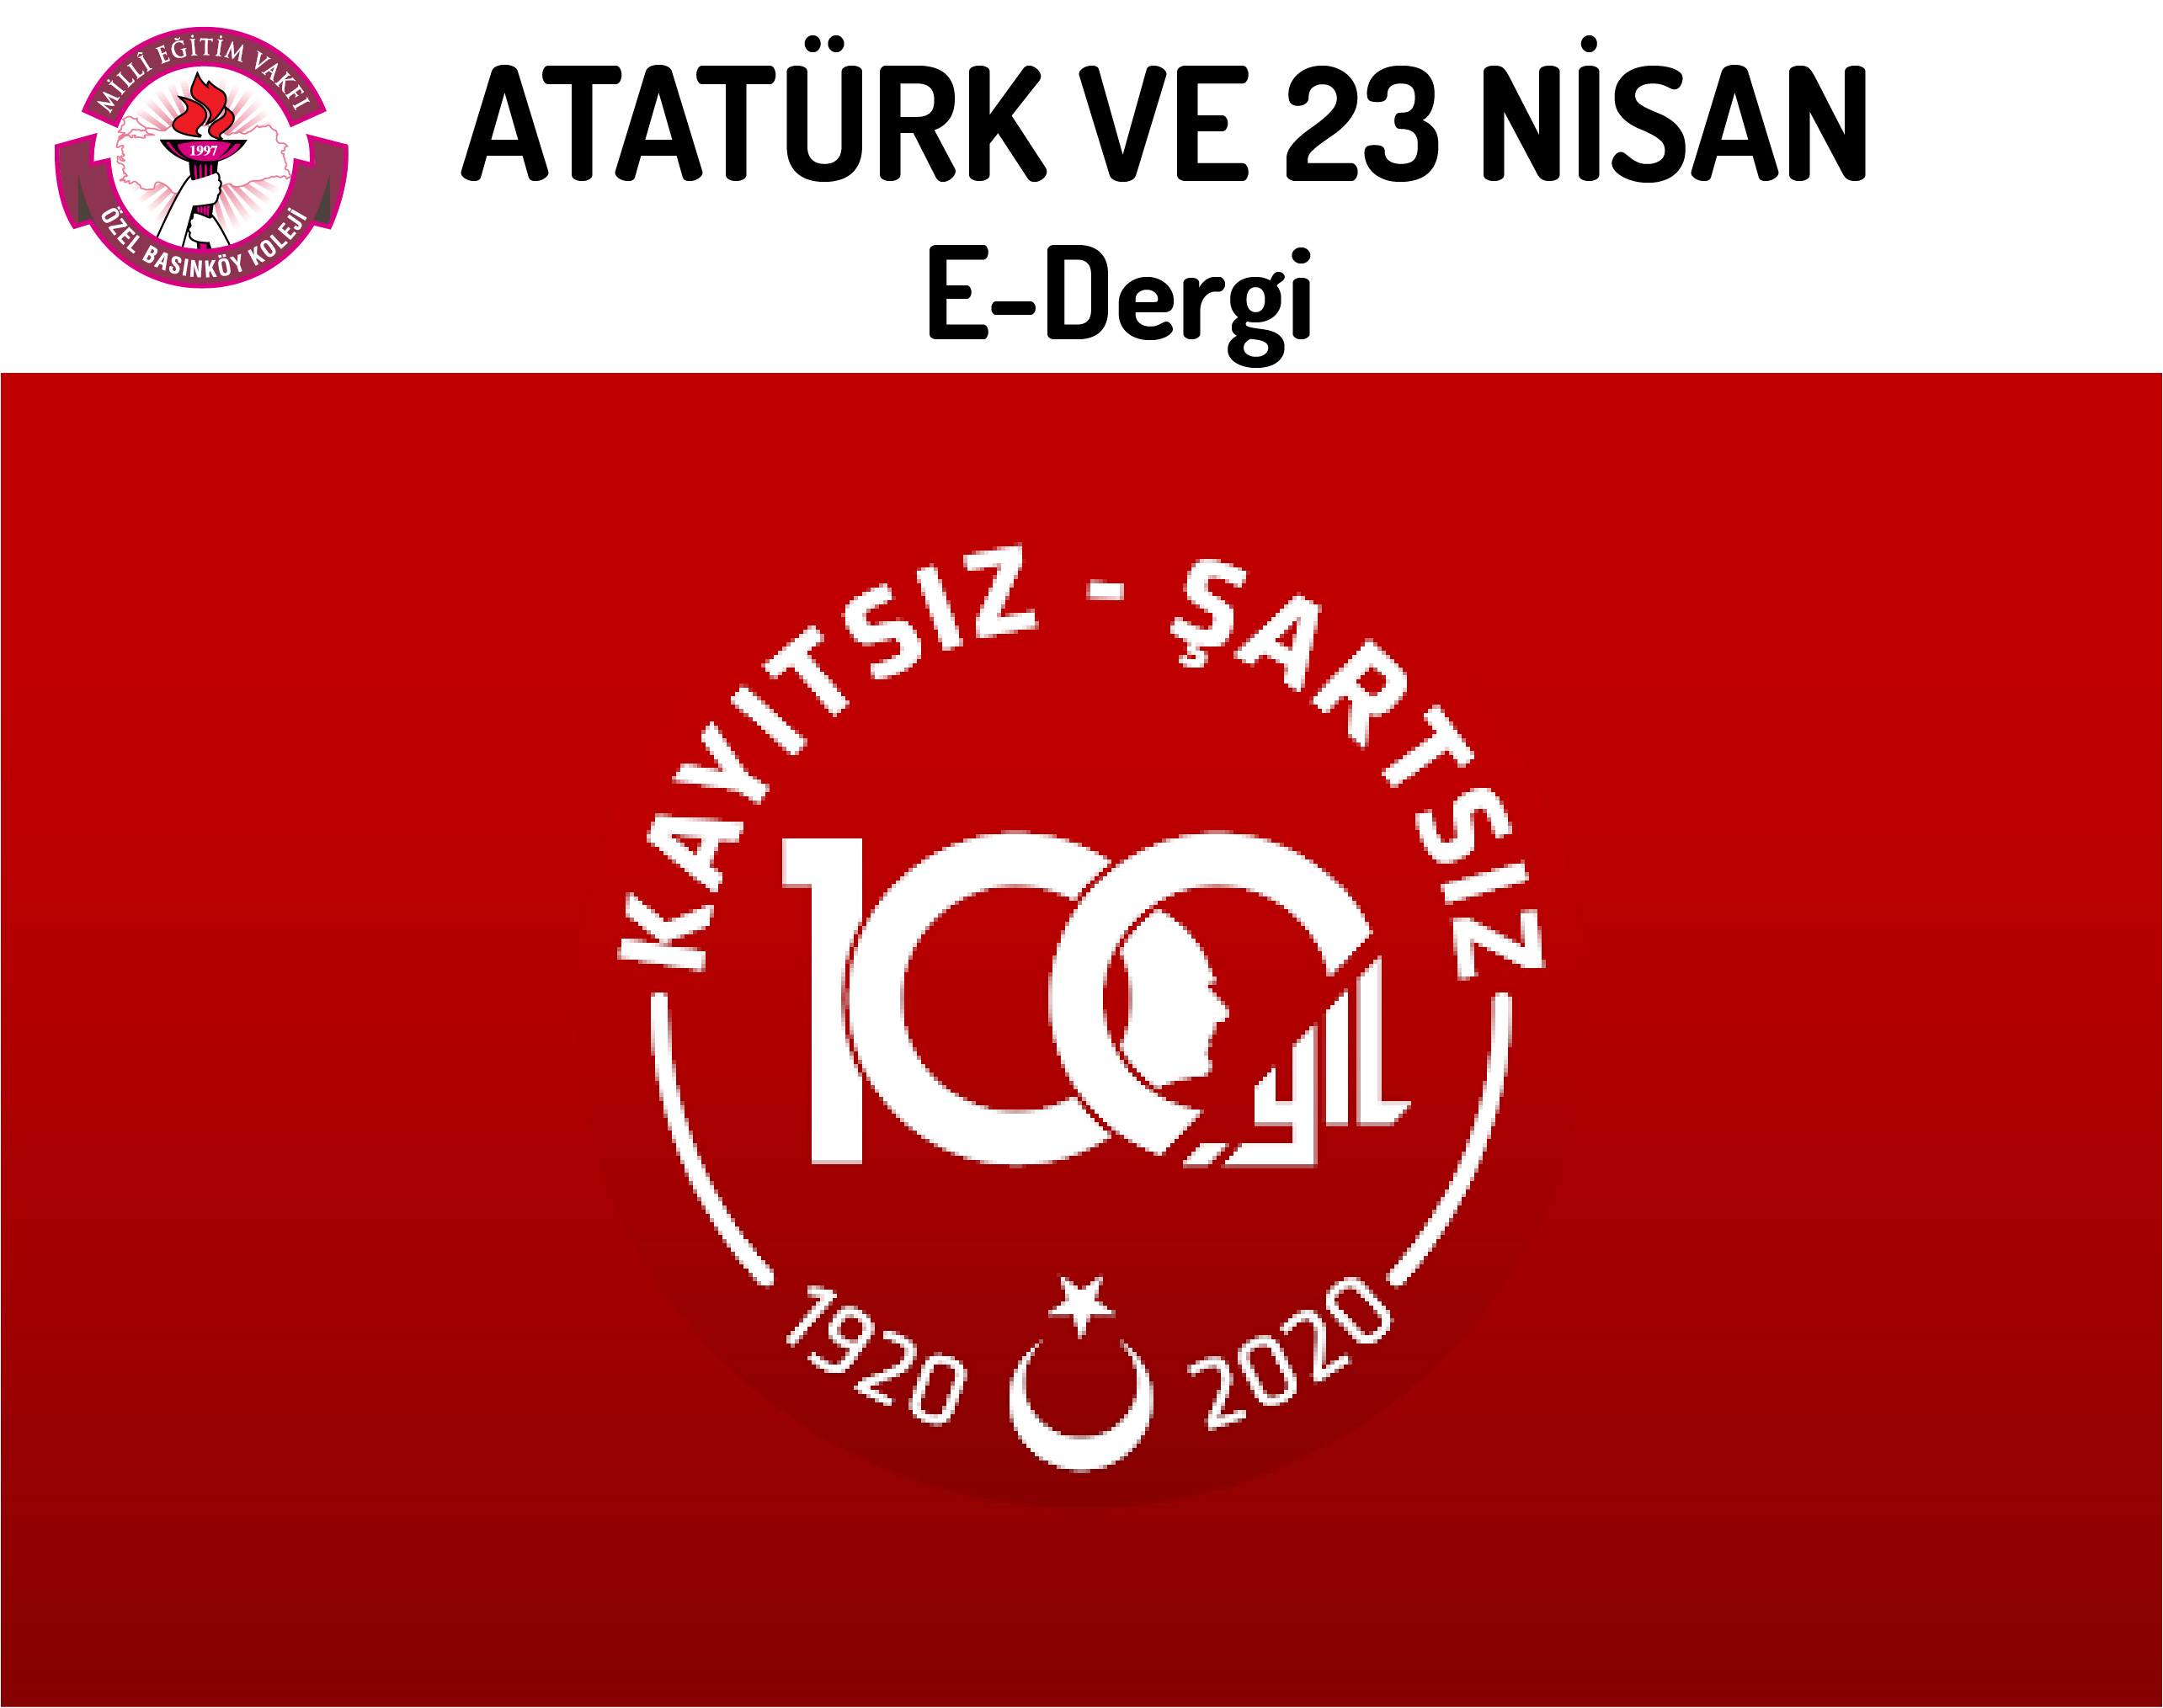 Atatürk ve 23 Nisan” Konulu E-Dergi Çalışması